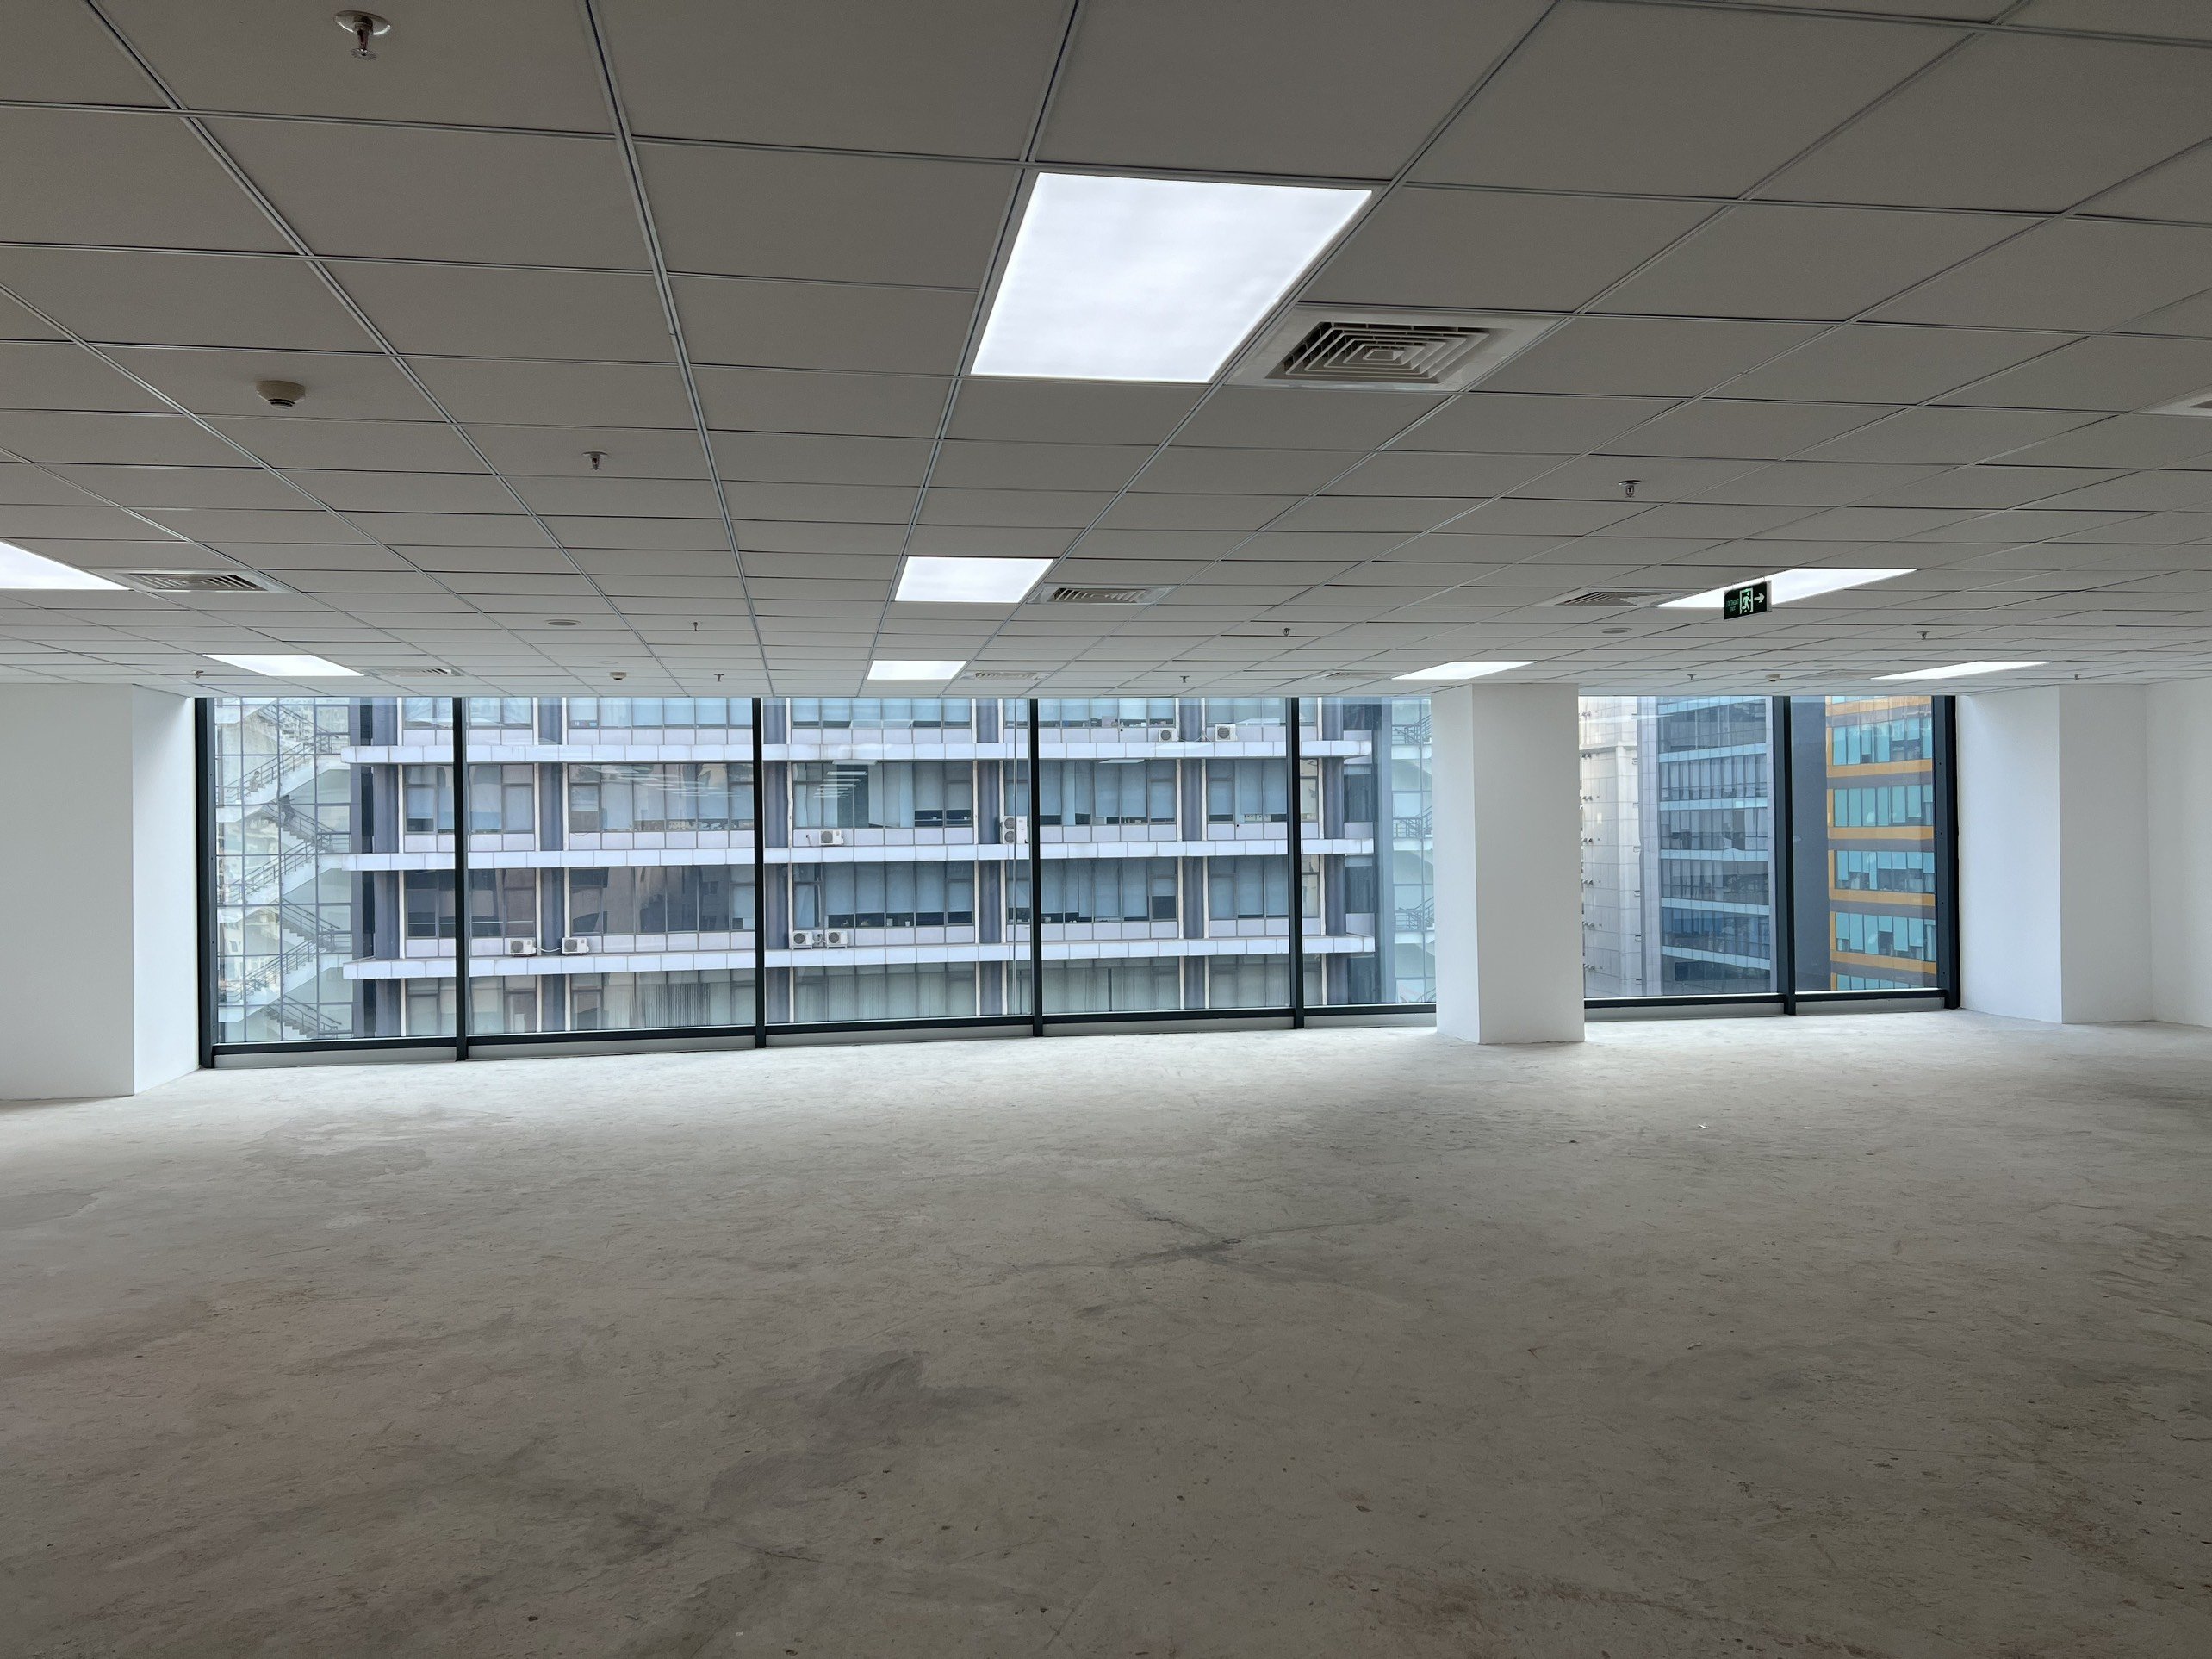 Tổ hợp The Nine quận Cầu Giấy trống 1700m2 sàn văn phòng cho thuê mới hoàn thiện nội thất cơ bản